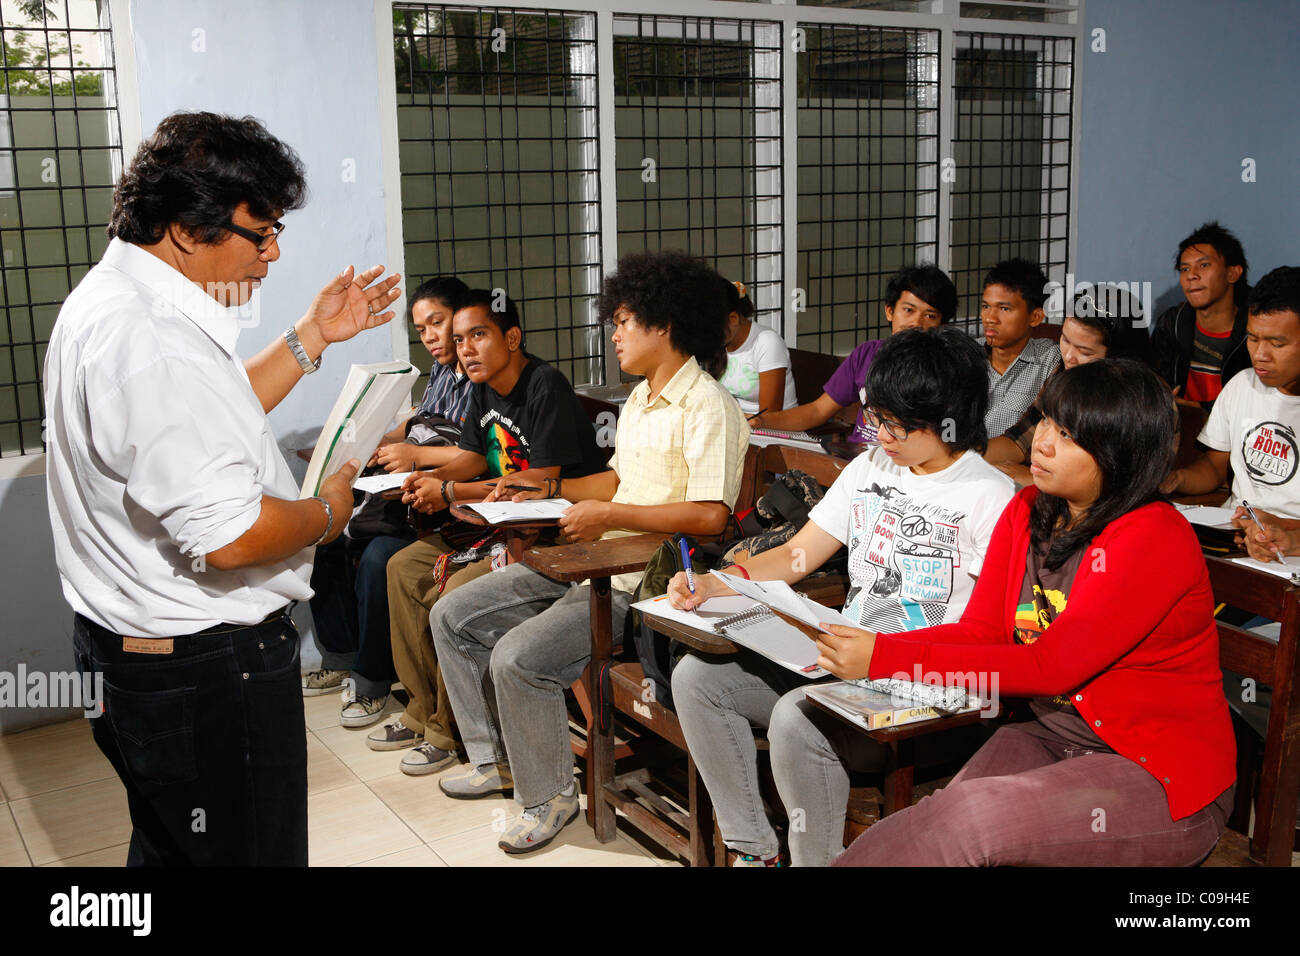 Les étudiants dans une conférence, Dre Nommensen University, Medan, Sumatra, Indonésie, Asie Banque D'Images